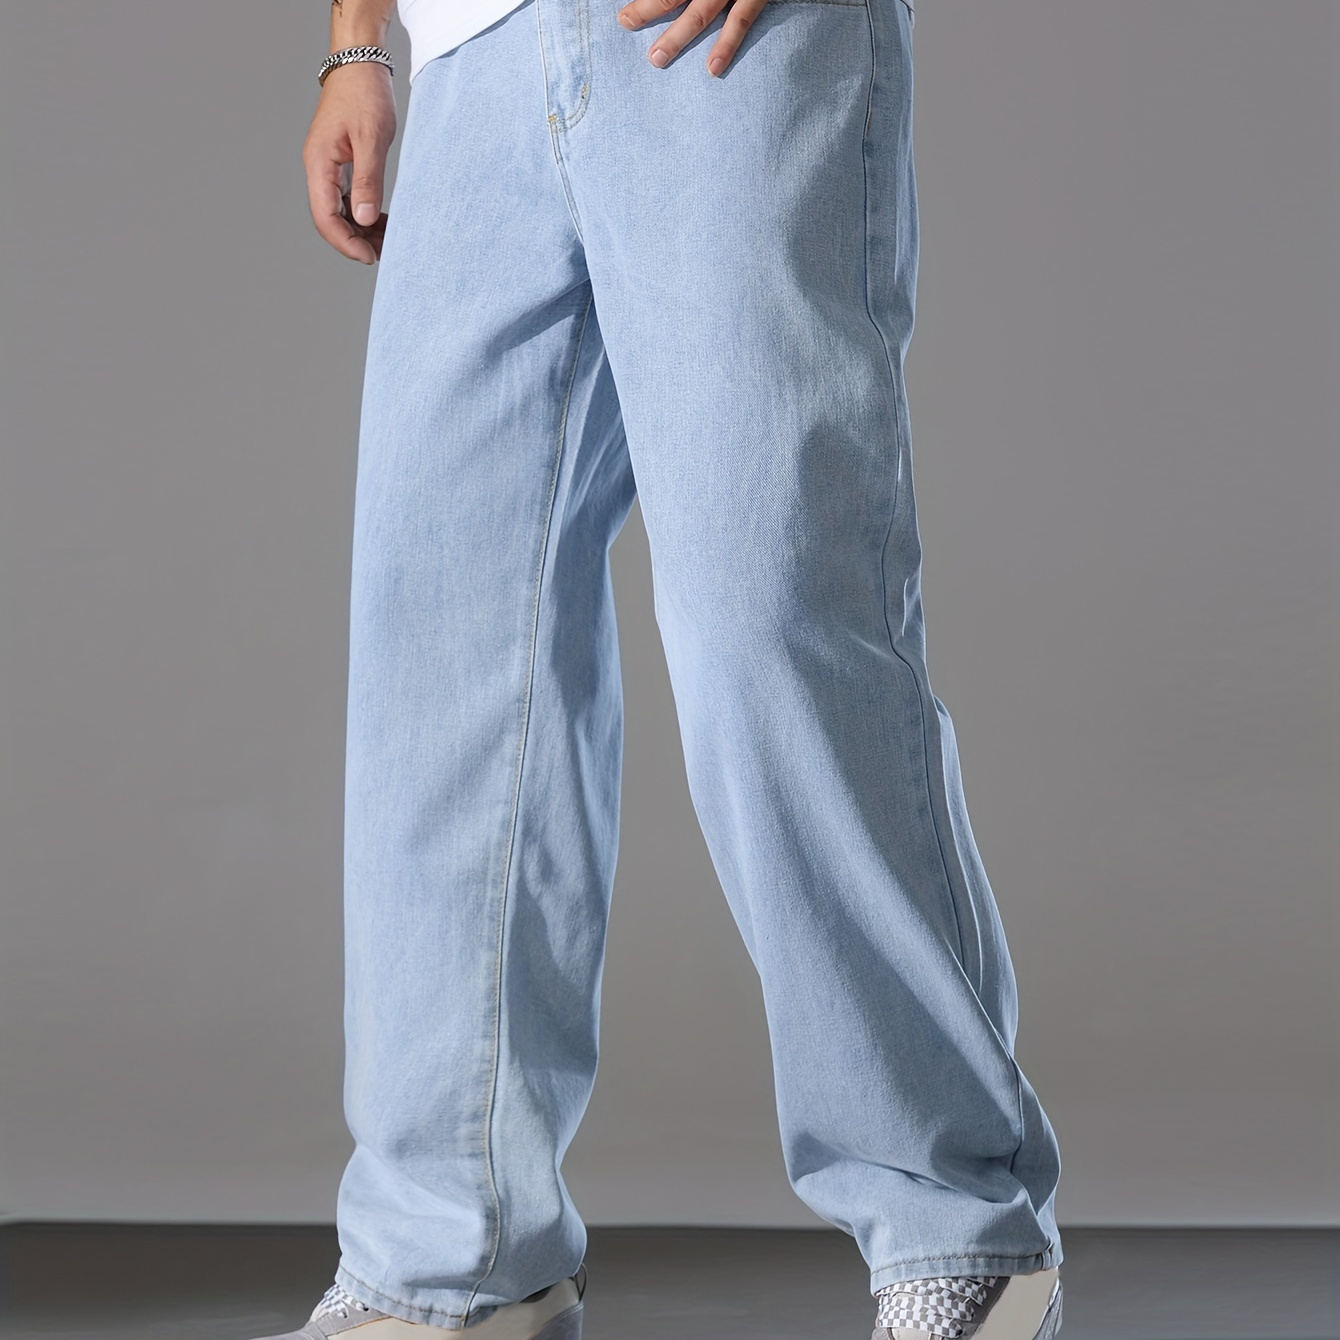 

Pantalon en denim lavé pour homme avec poches, jean en mélange de coton pour des activités en plein air, idéal comme cadeau